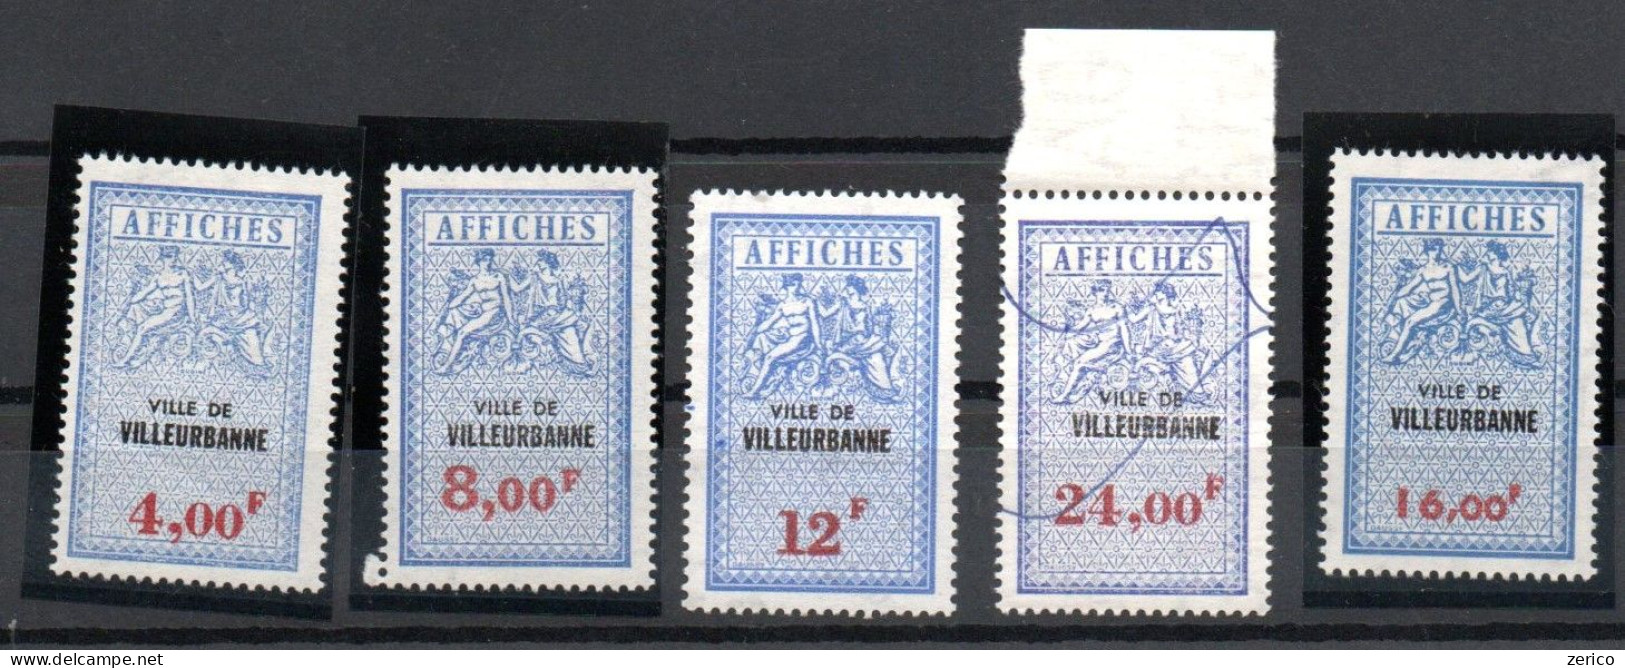 VILLEURBANNE Rhône Taxes Sur Les Affiches Type III Fiscal Fiscaux Affiche Affichage - Stamps